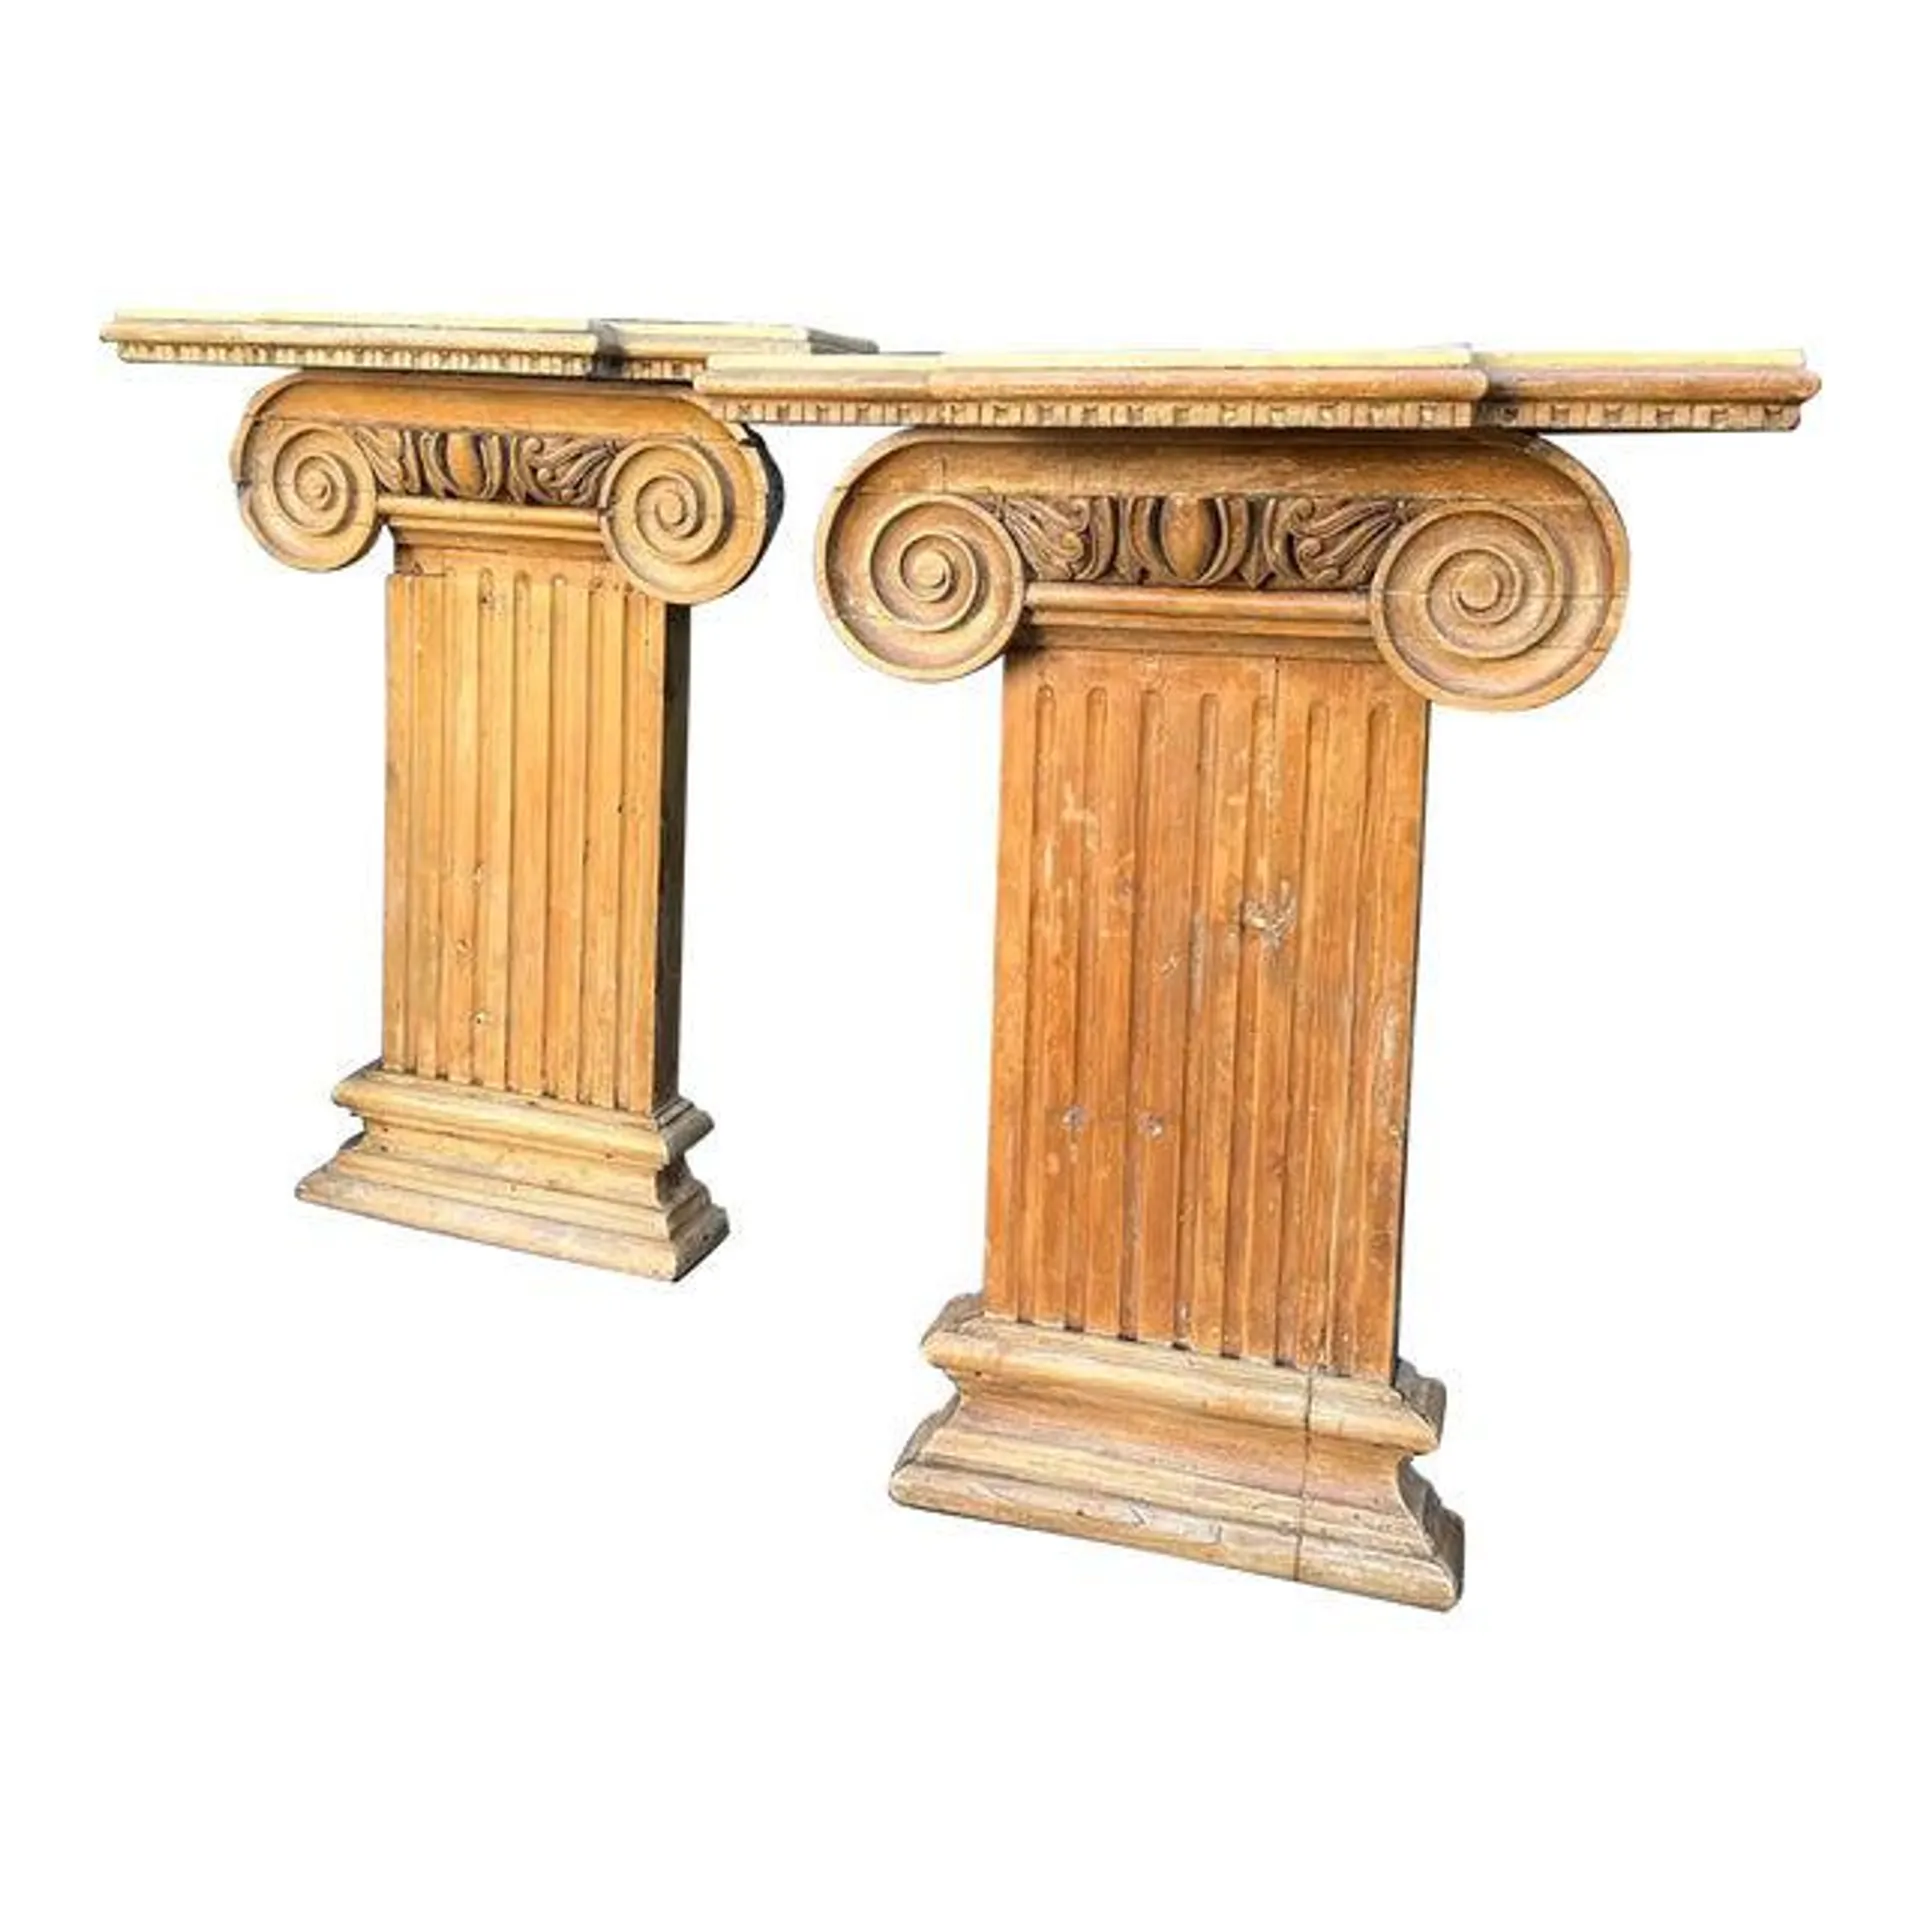 Antique 18th C Corinthian Column Now Console Tables - a Pair